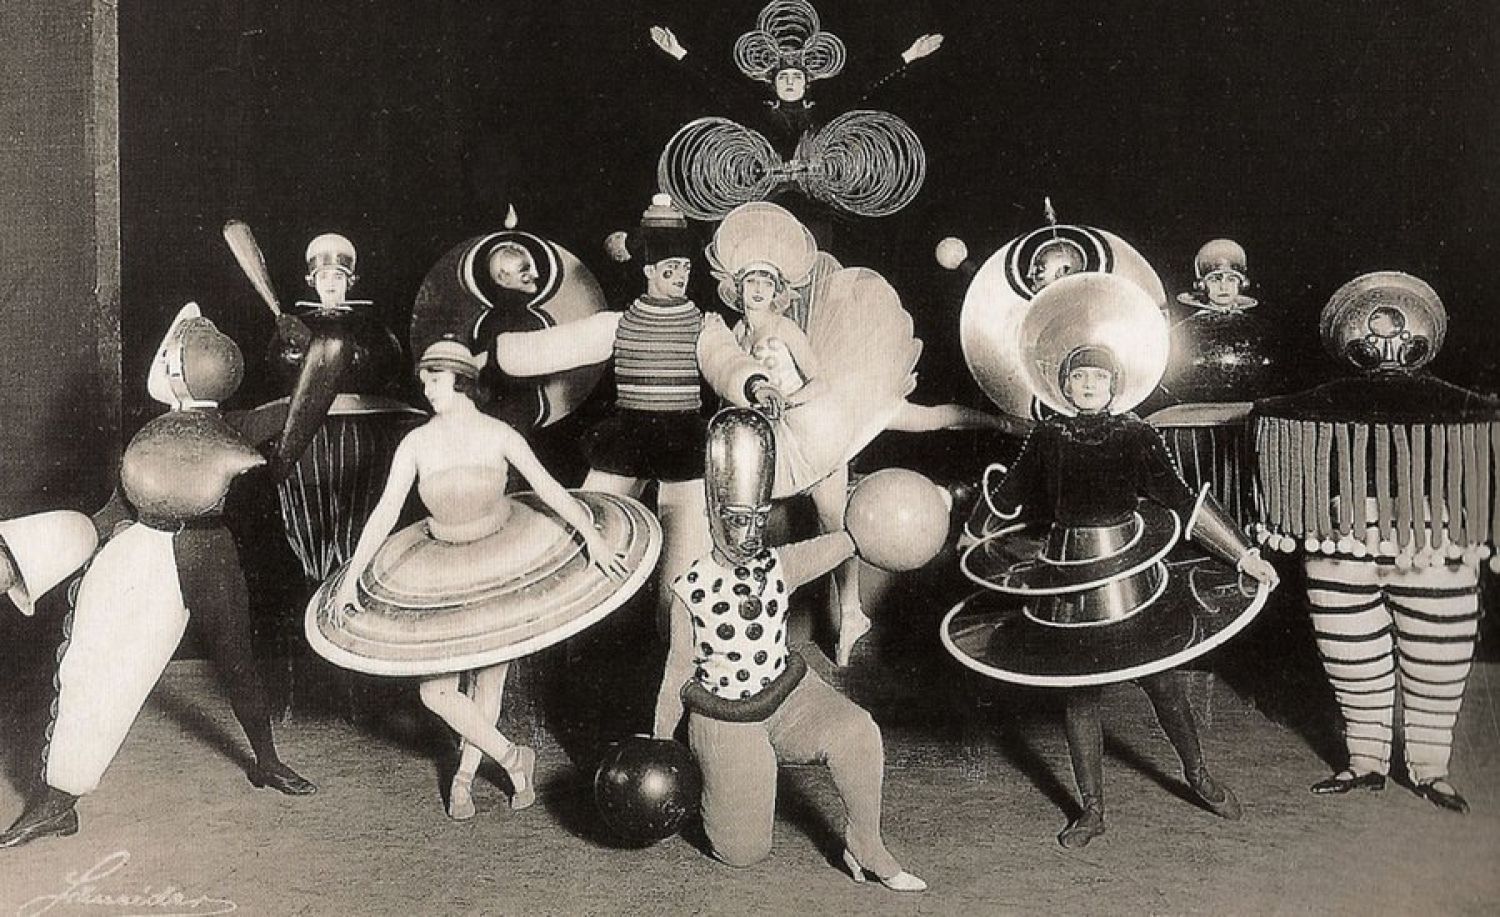 A 1920s Bauhaus costume party, featuring designs by Oskar Schlemmer